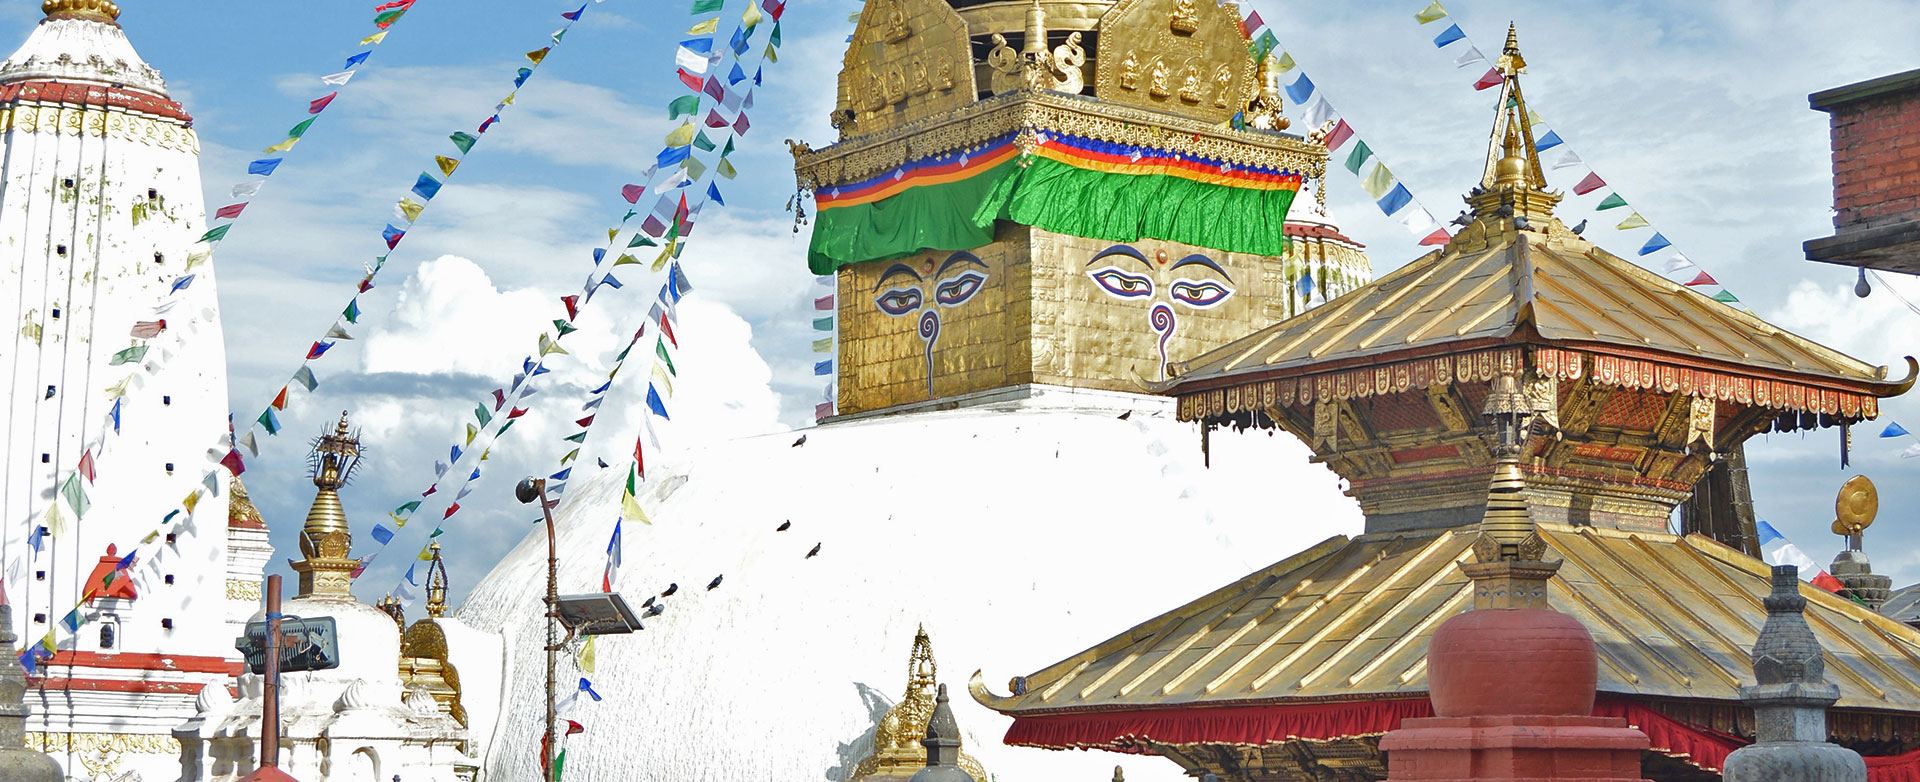 Swyambhunath (Monkey Temple))